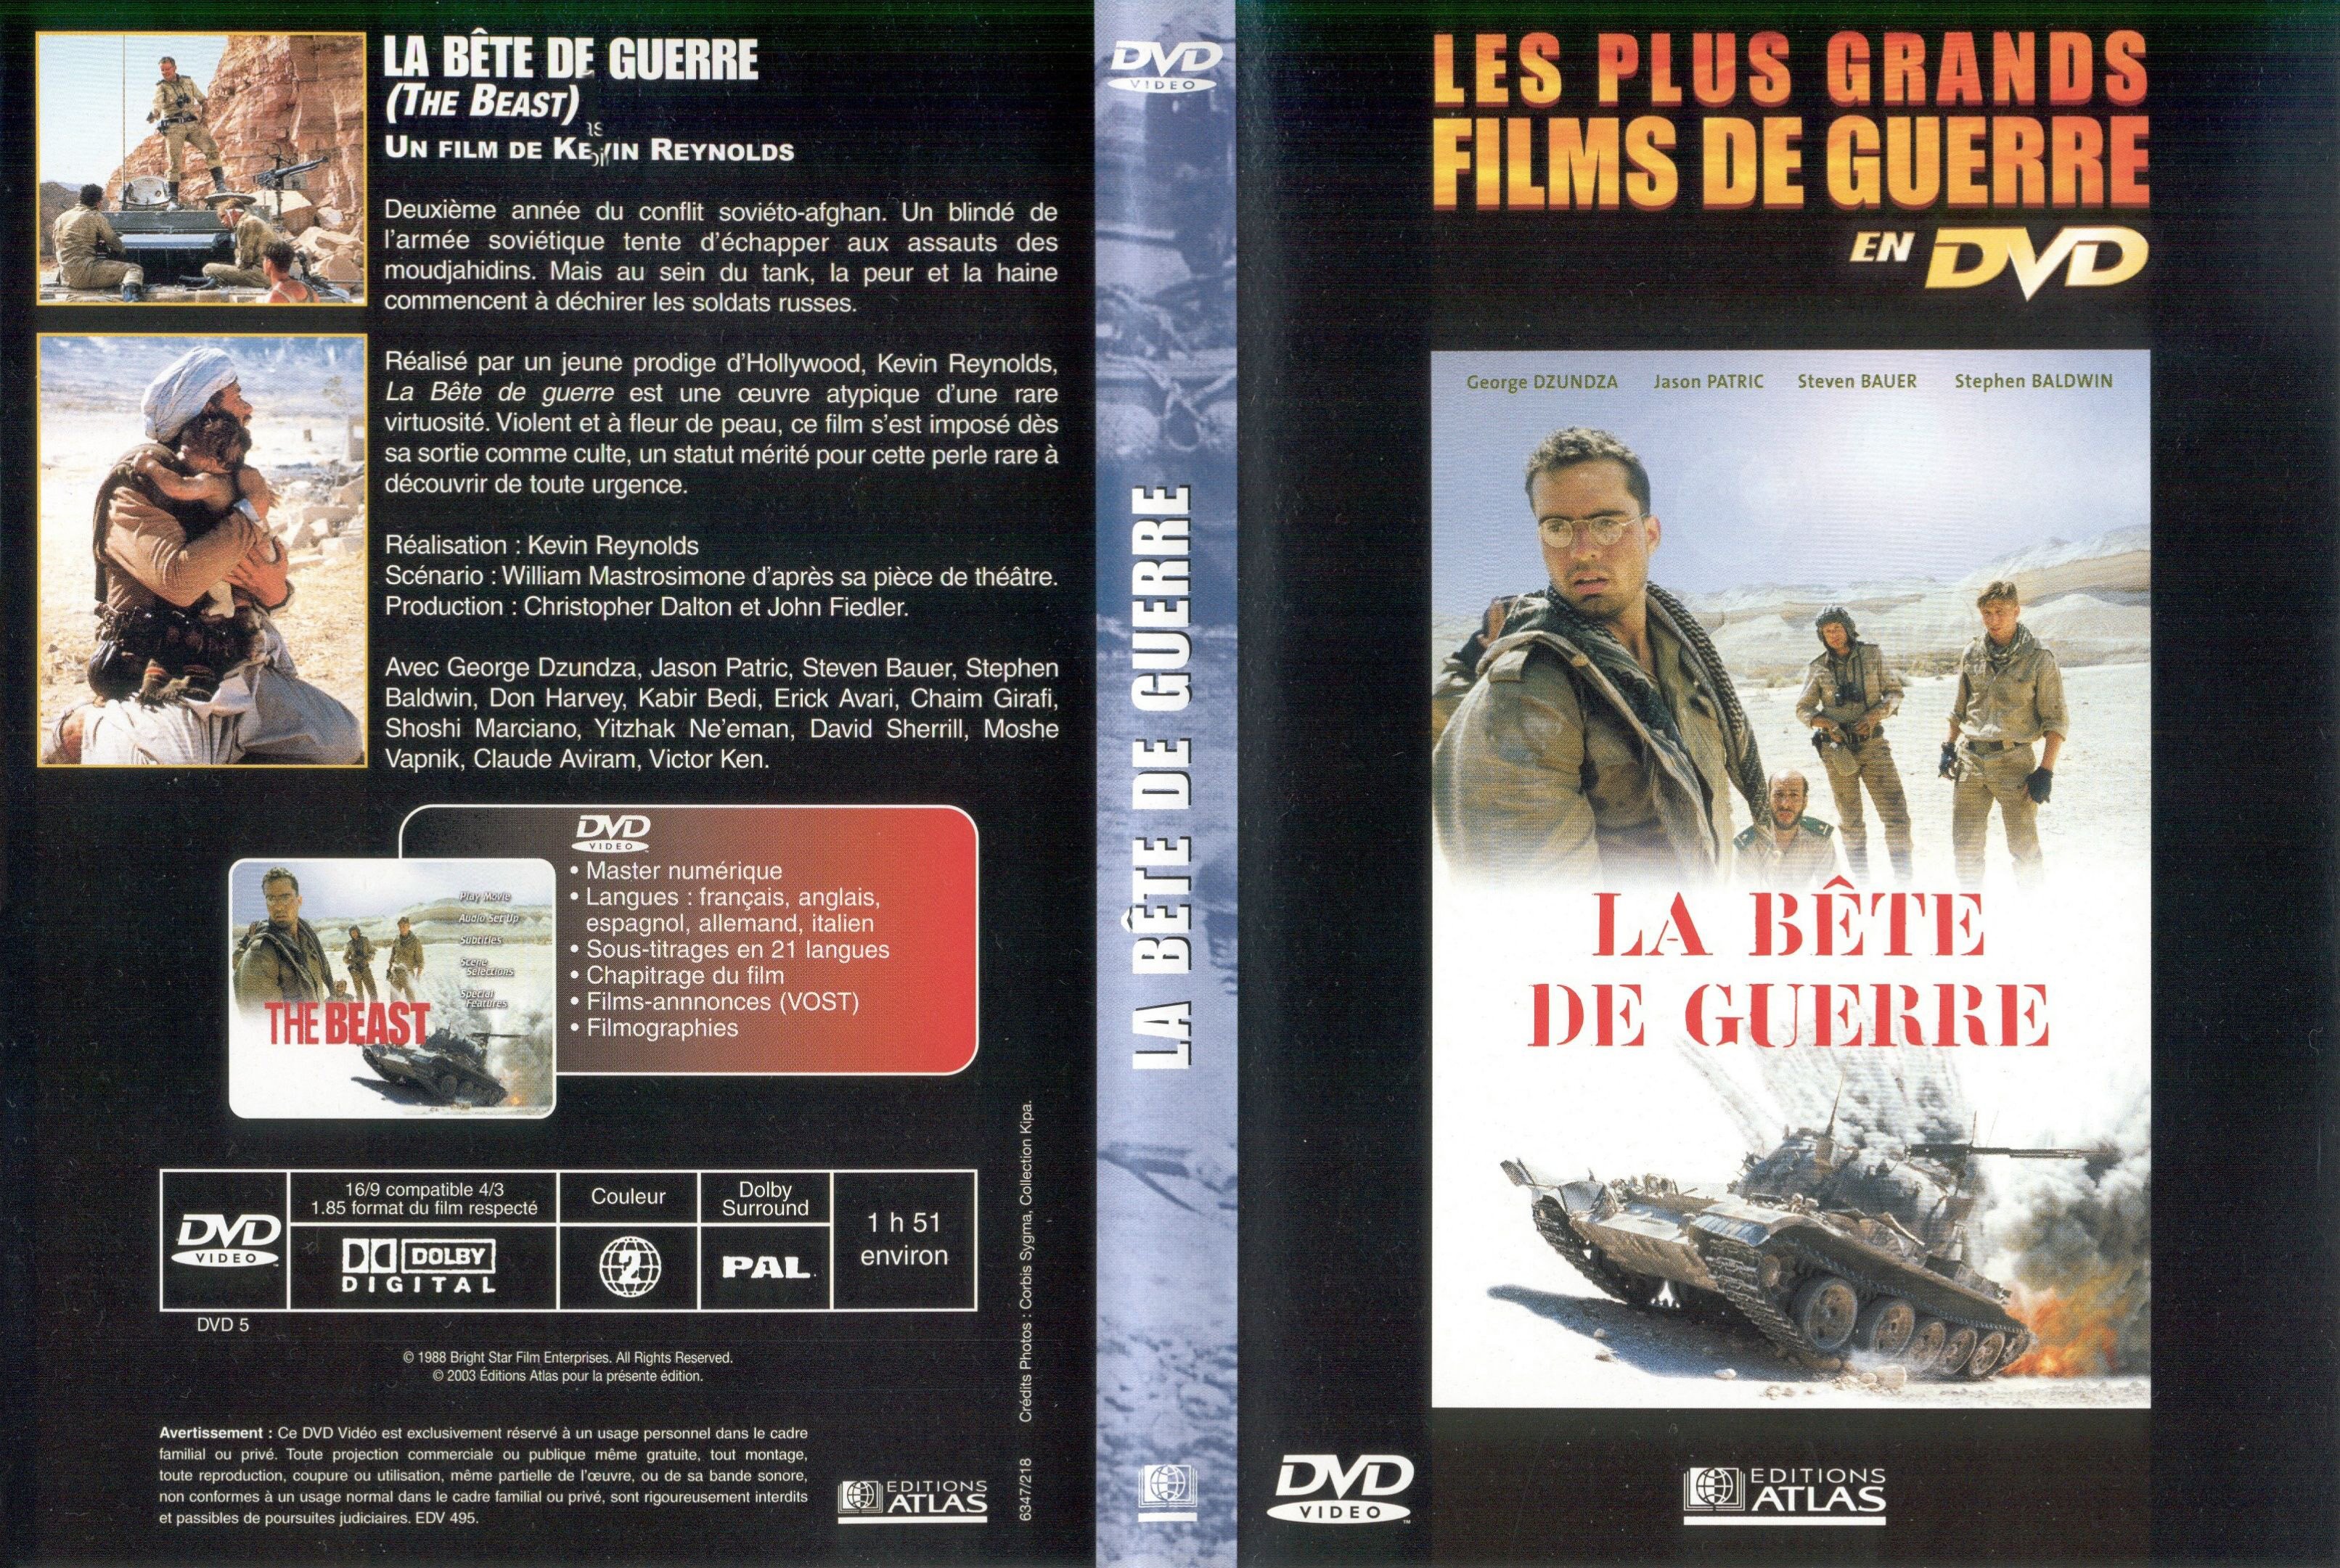 Jaquette DVD La bete de guerre v2